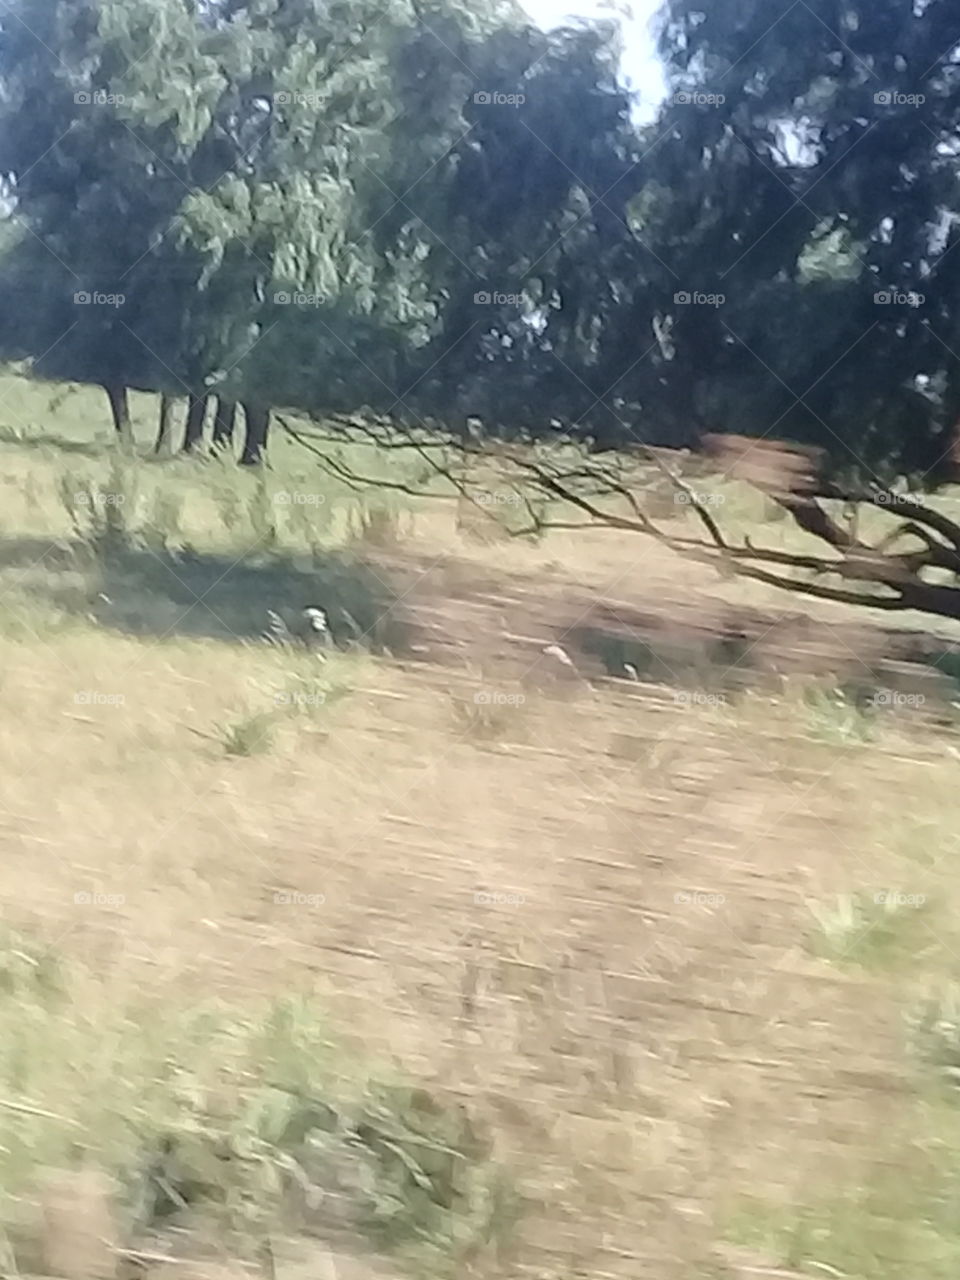 campo de pastura con un pequeño bosque de eucaliptos al fondo. Foto tomada desde un ómnibus en movimiento a gran velocidad.